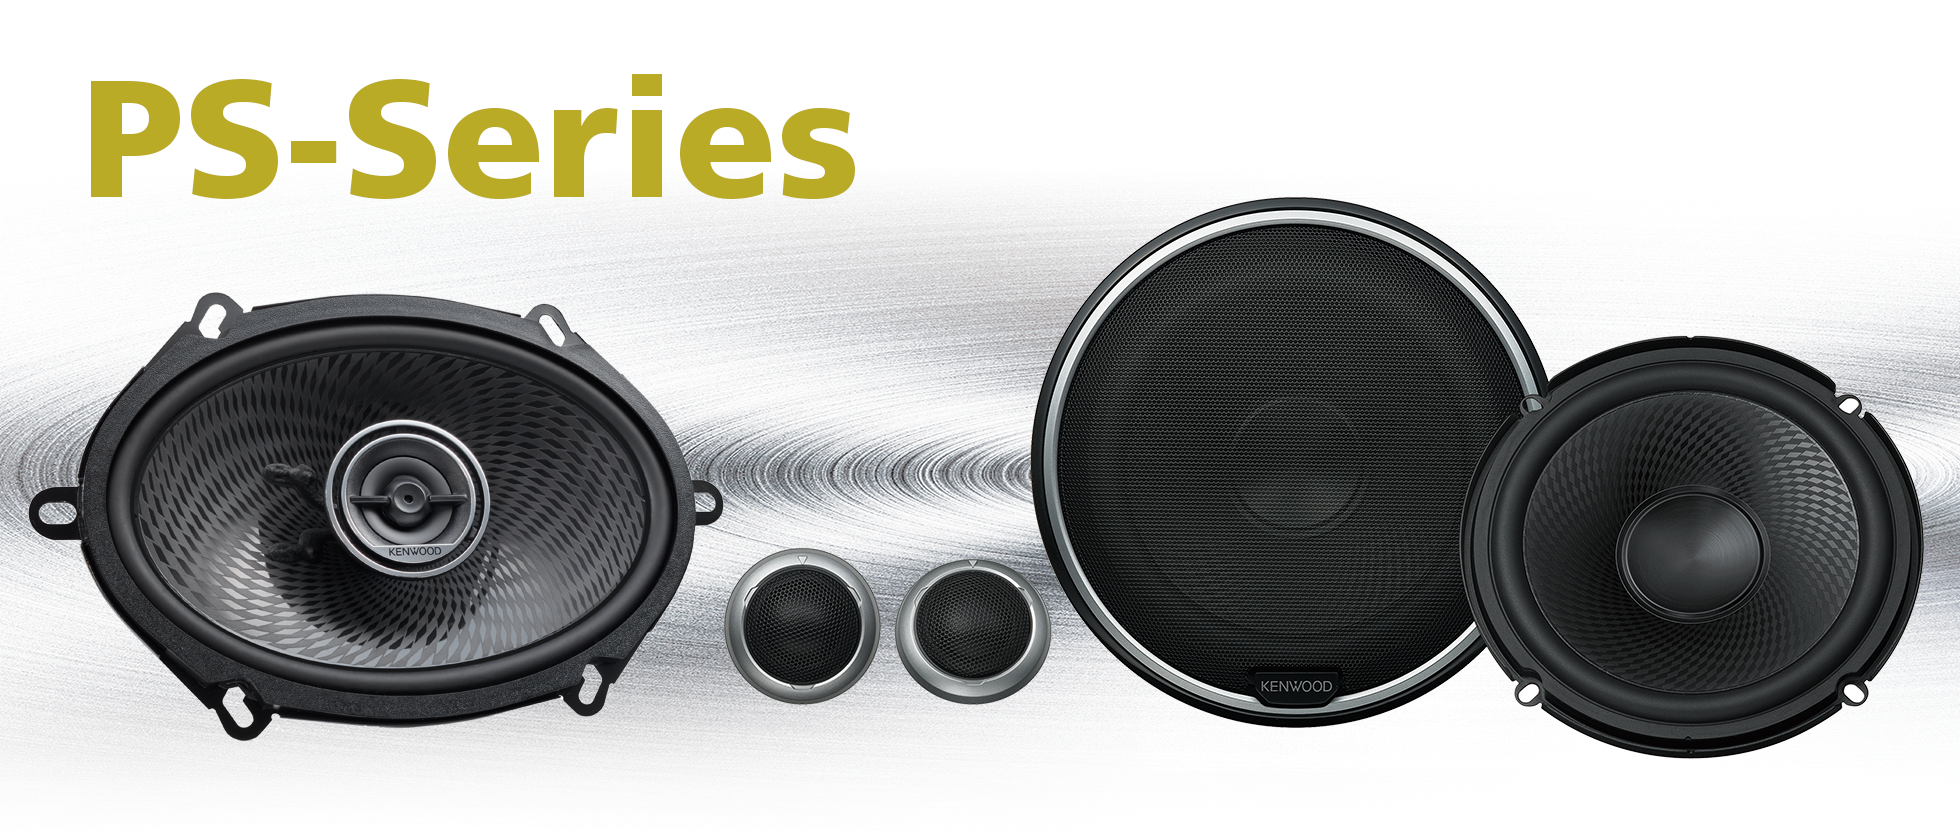 PS-series speakers